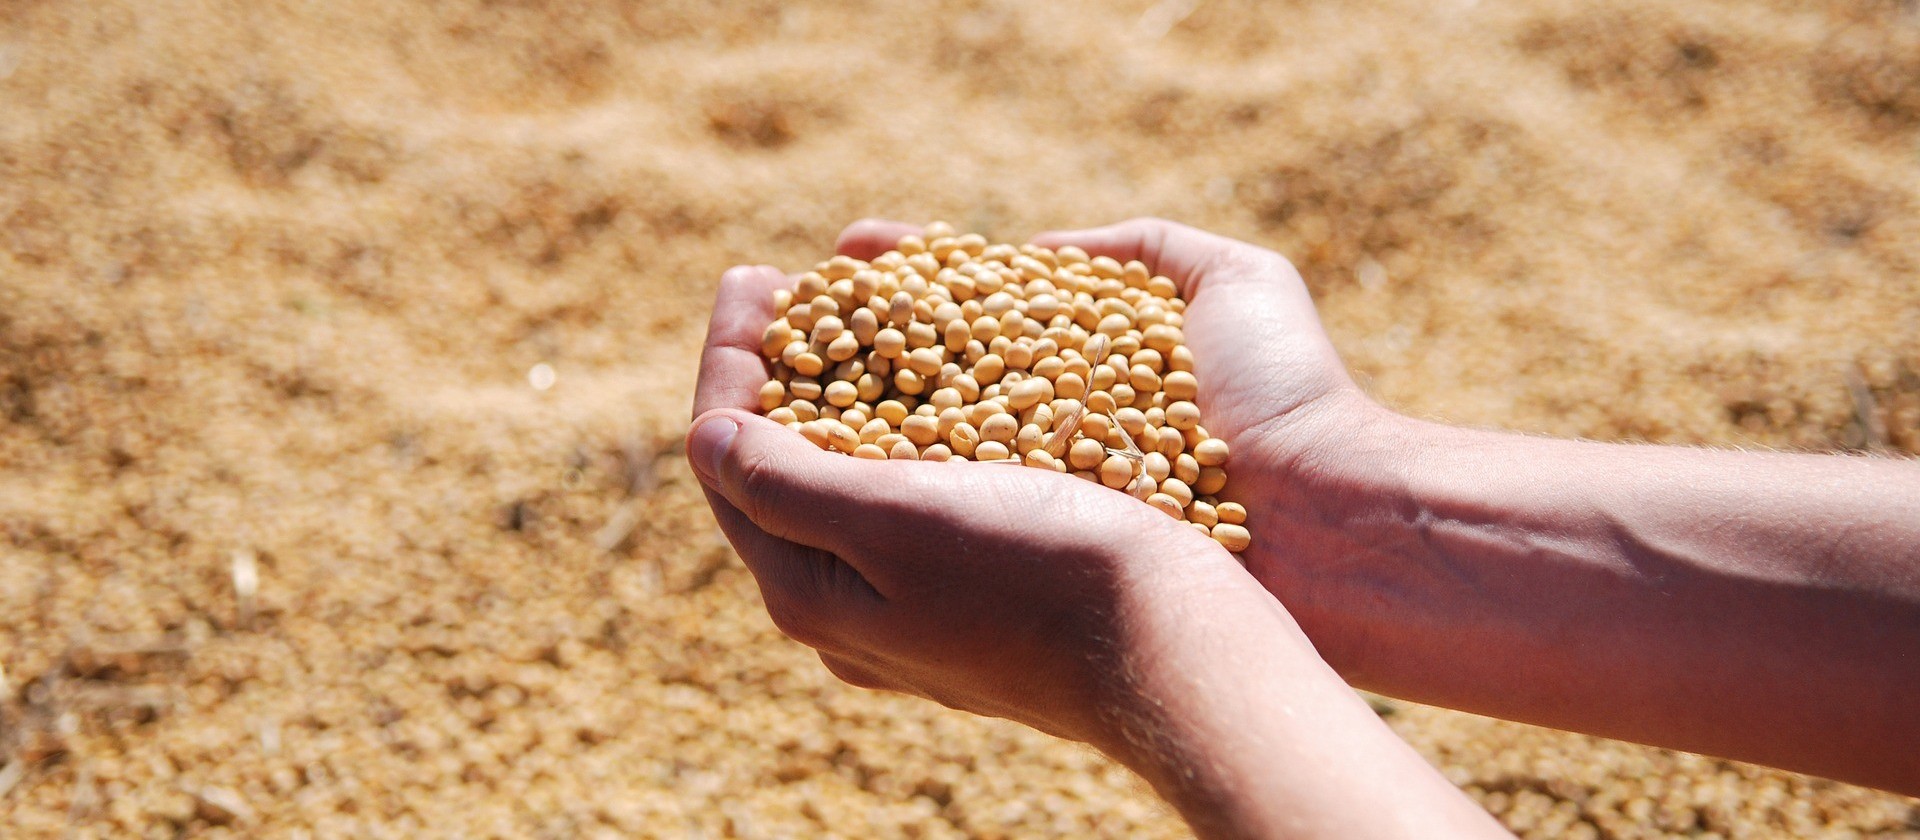 Portos do Arco Norte embarcaram 34% da soja e 31% do milho entre janeiro e agosto